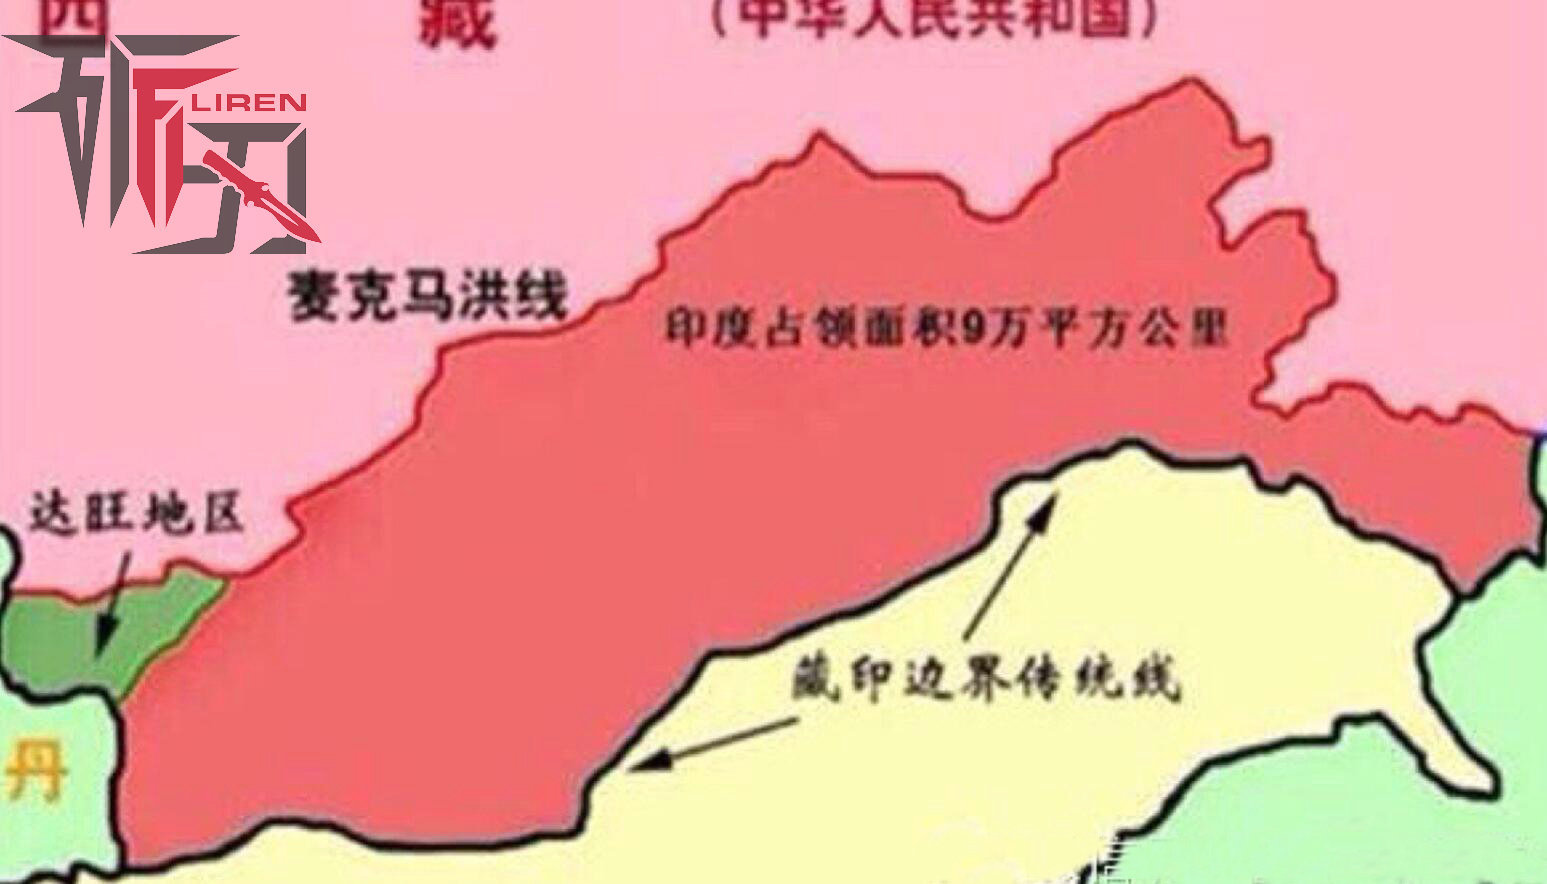 中印边境问题:藏南，是中印边界东段的一个争议地区，面积约为6.5万平方公里，位于喜马拉雅山脉南侧。该地区之西是不丹领土，之东是缅甸，向南是印度的阿萨姆邦和那加兰邦，向北为中国的实际控制地区。藏南地区与中国实际控制下的西藏以英藏西姆拉会议划定的“麦克马洪线”为分界线。长期以来，中印边境问题也主要围绕藏南而展开。